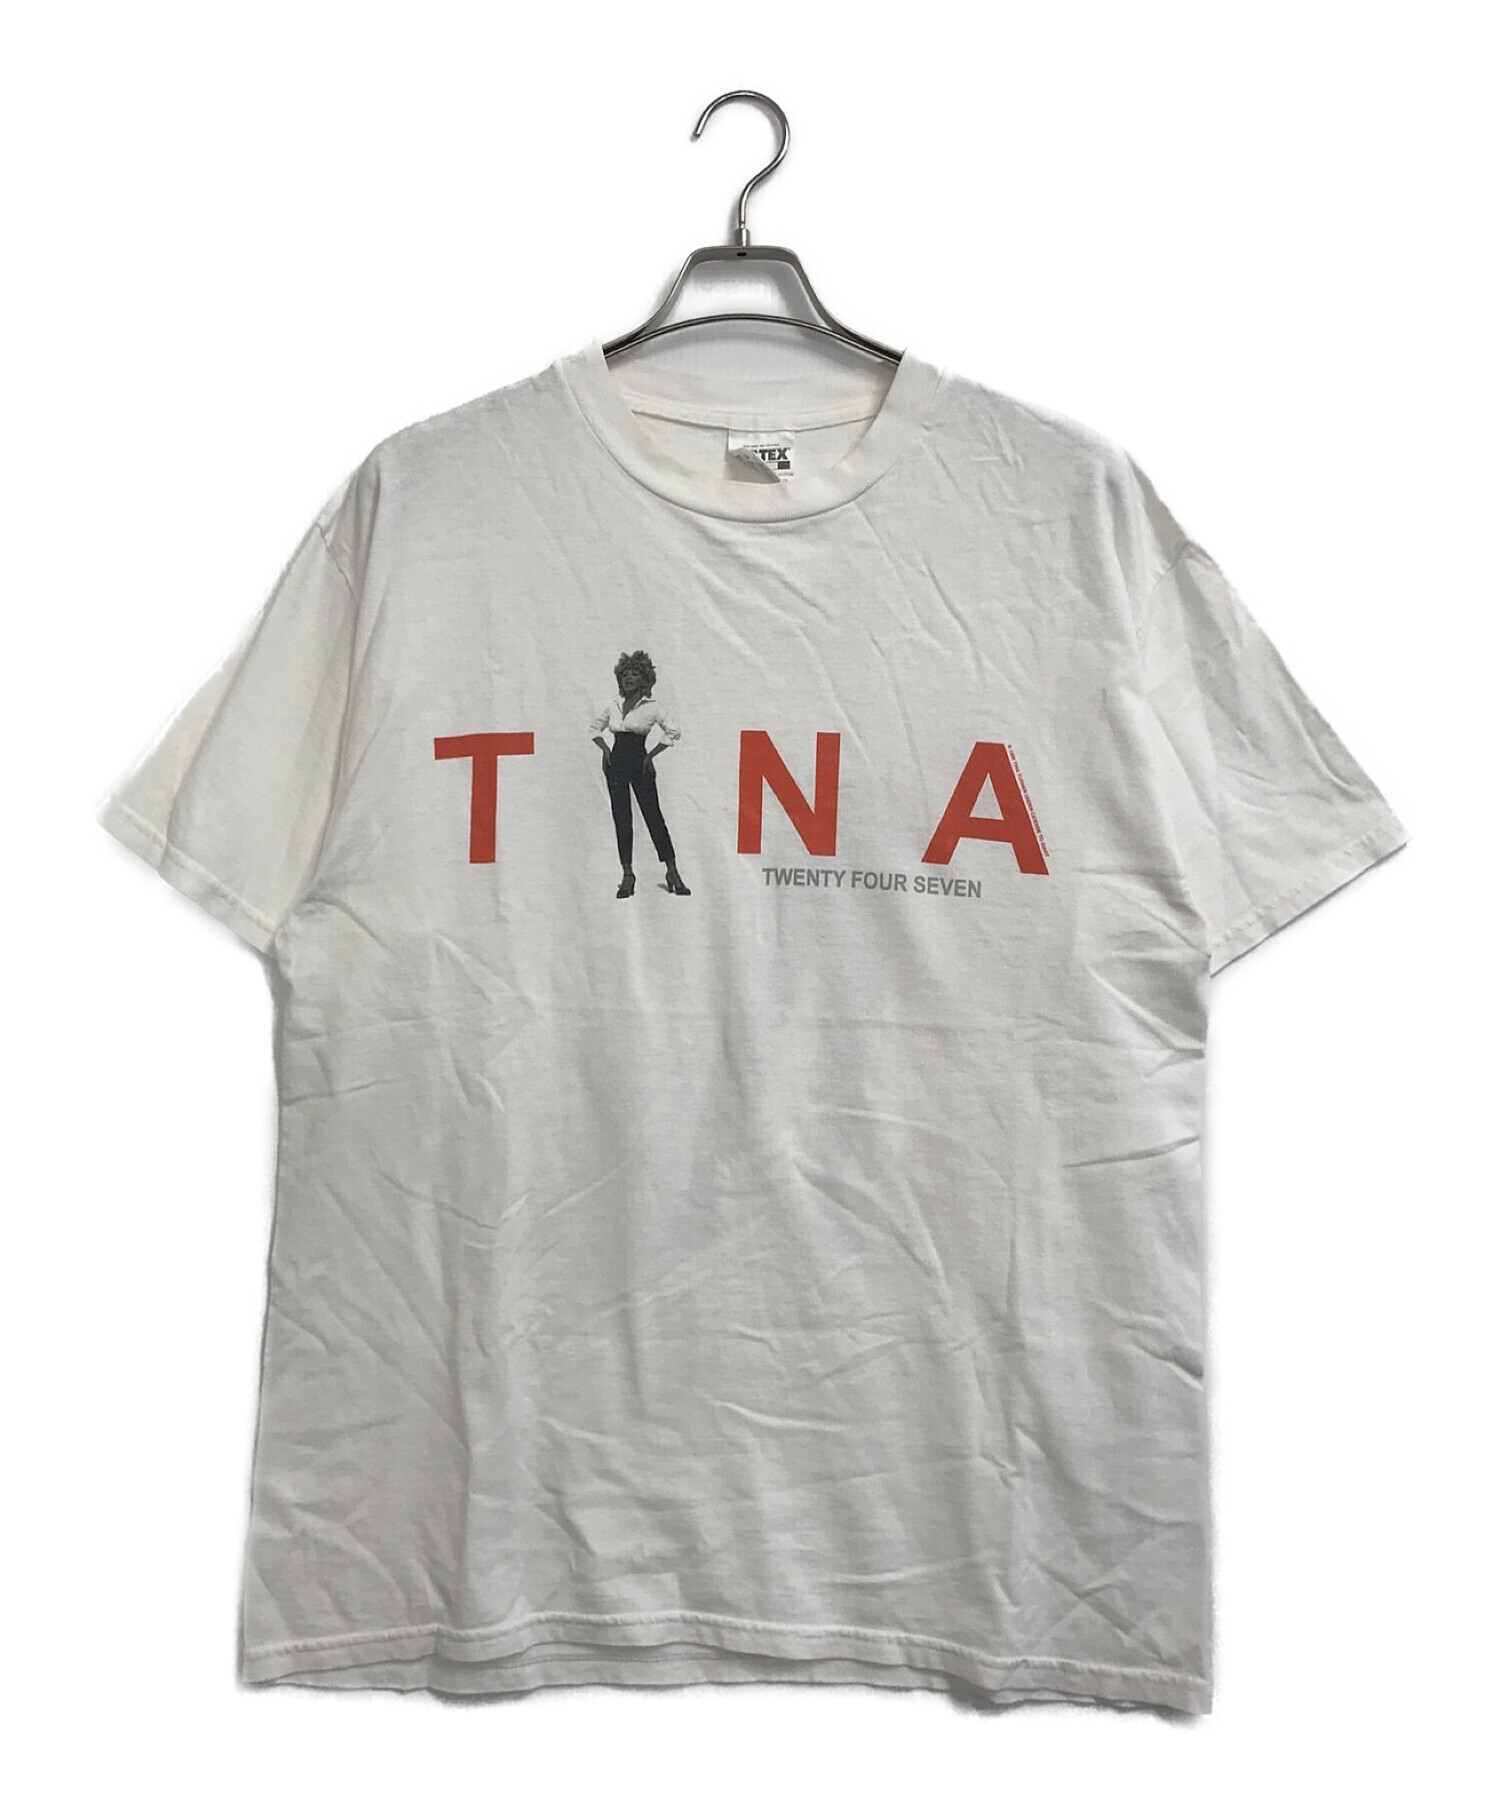 ティナターナ tina turer 1999年製ヴィンテージ Tシャツ ロレンゾ